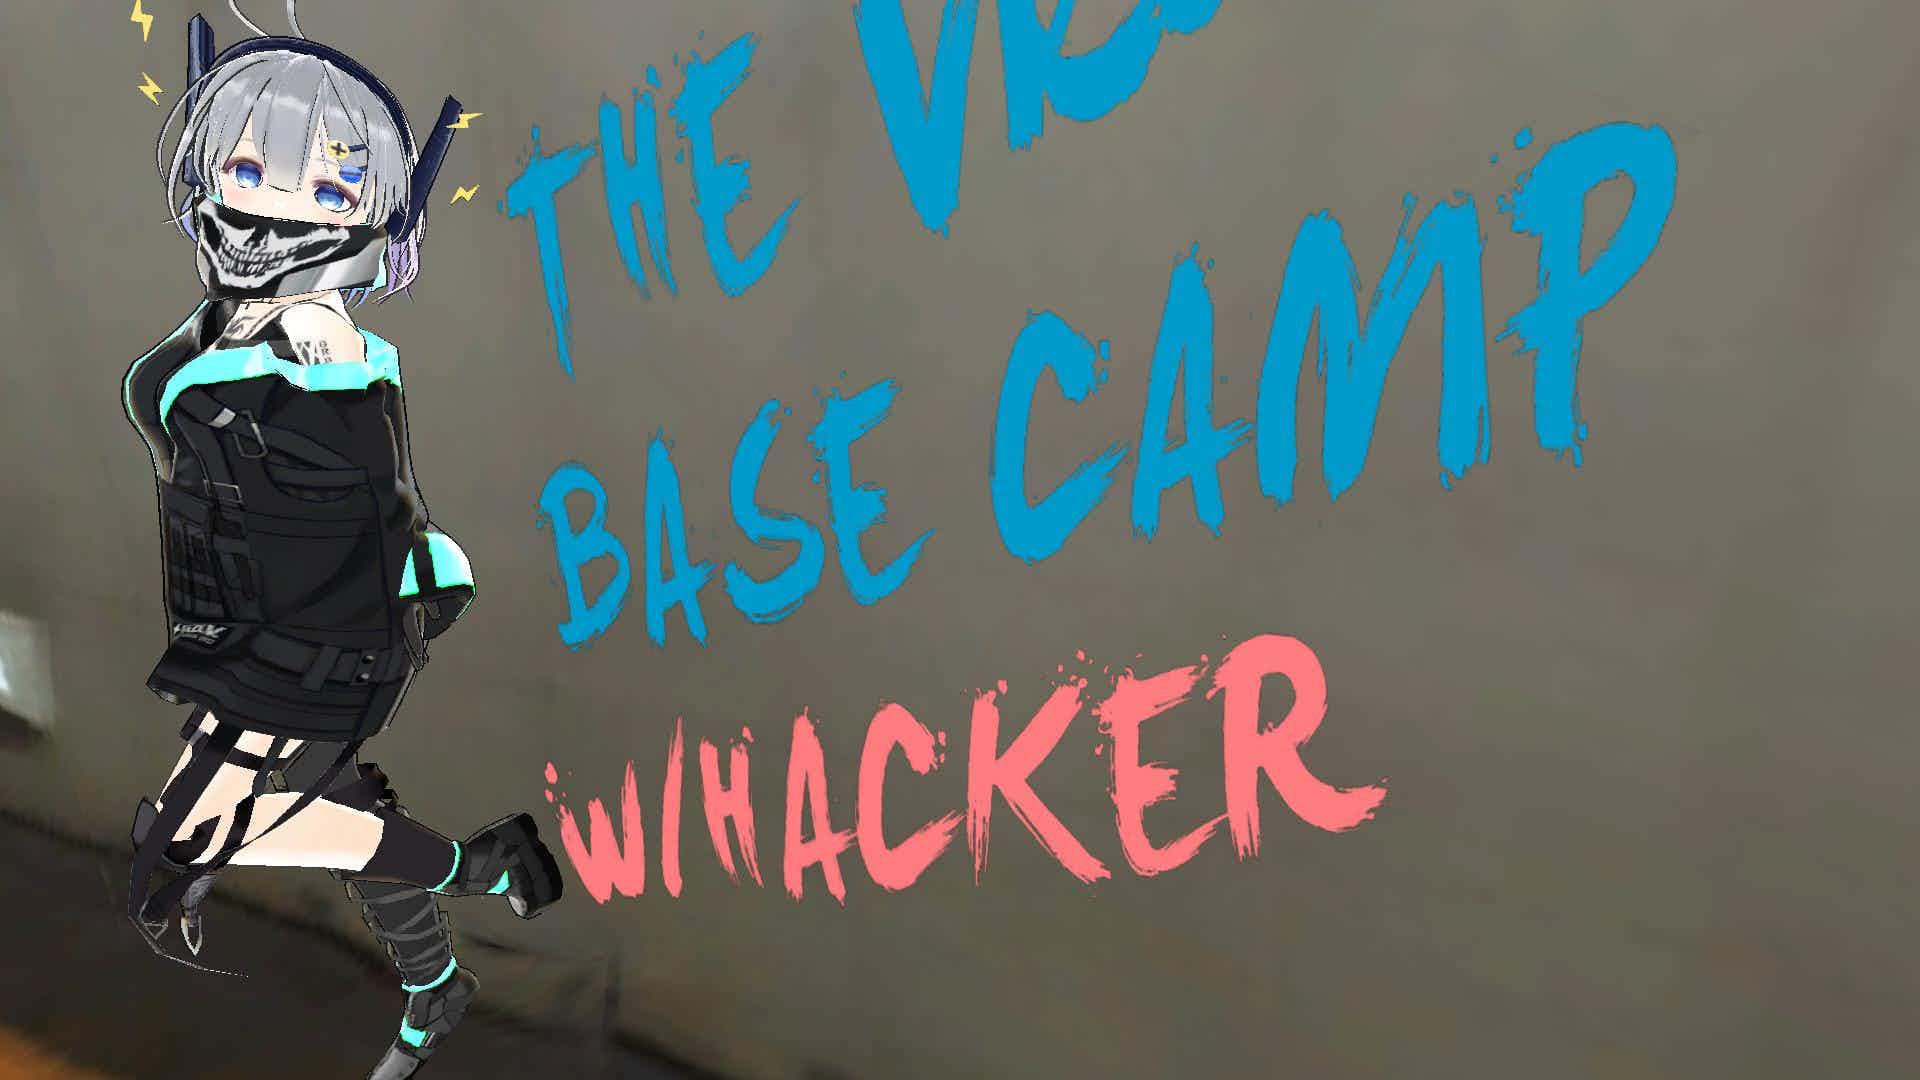 THE Vko BASE CAMP w/HACKER